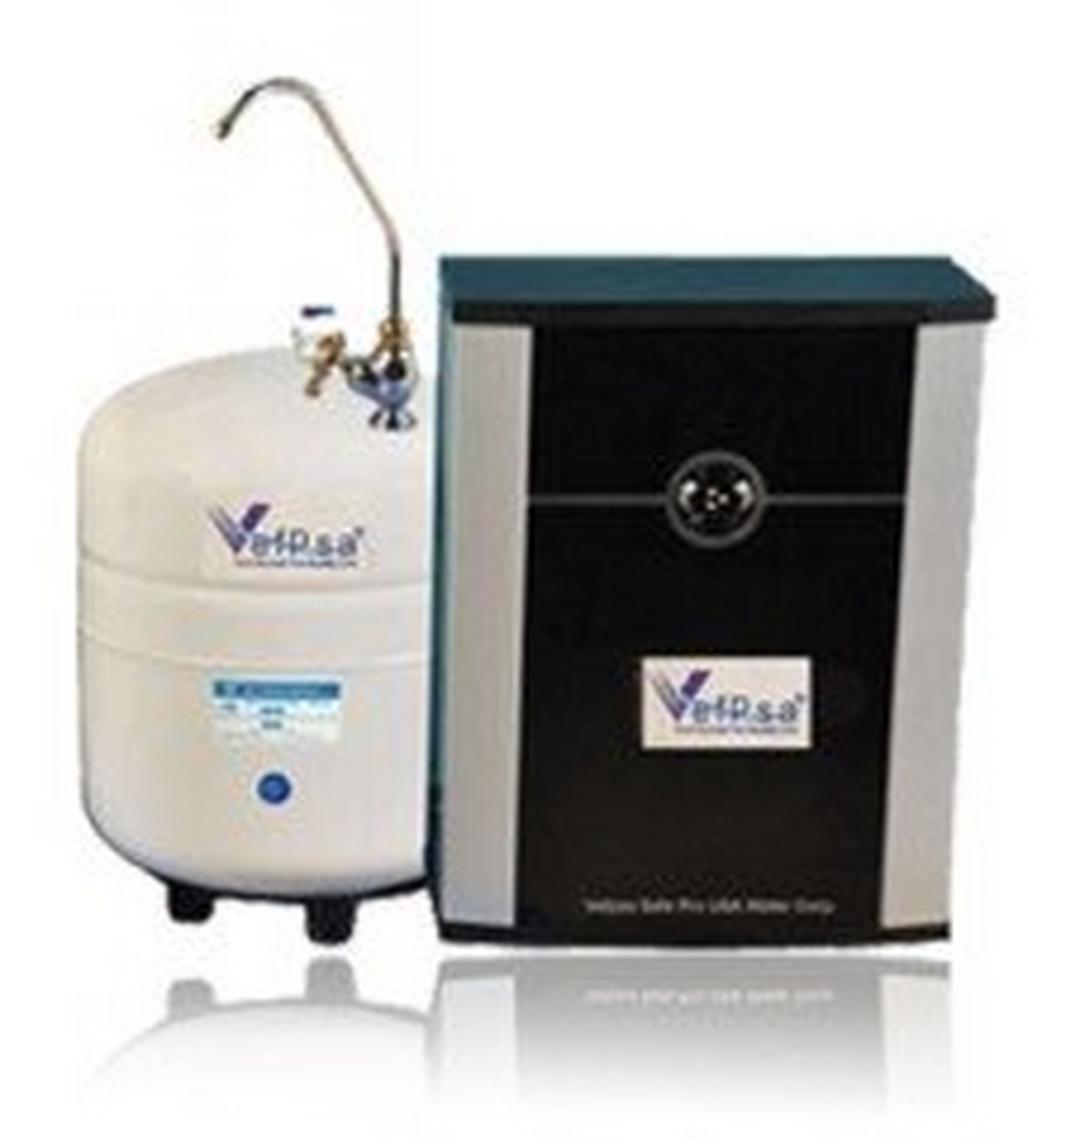 Vefpsa Premium Water Purifier System